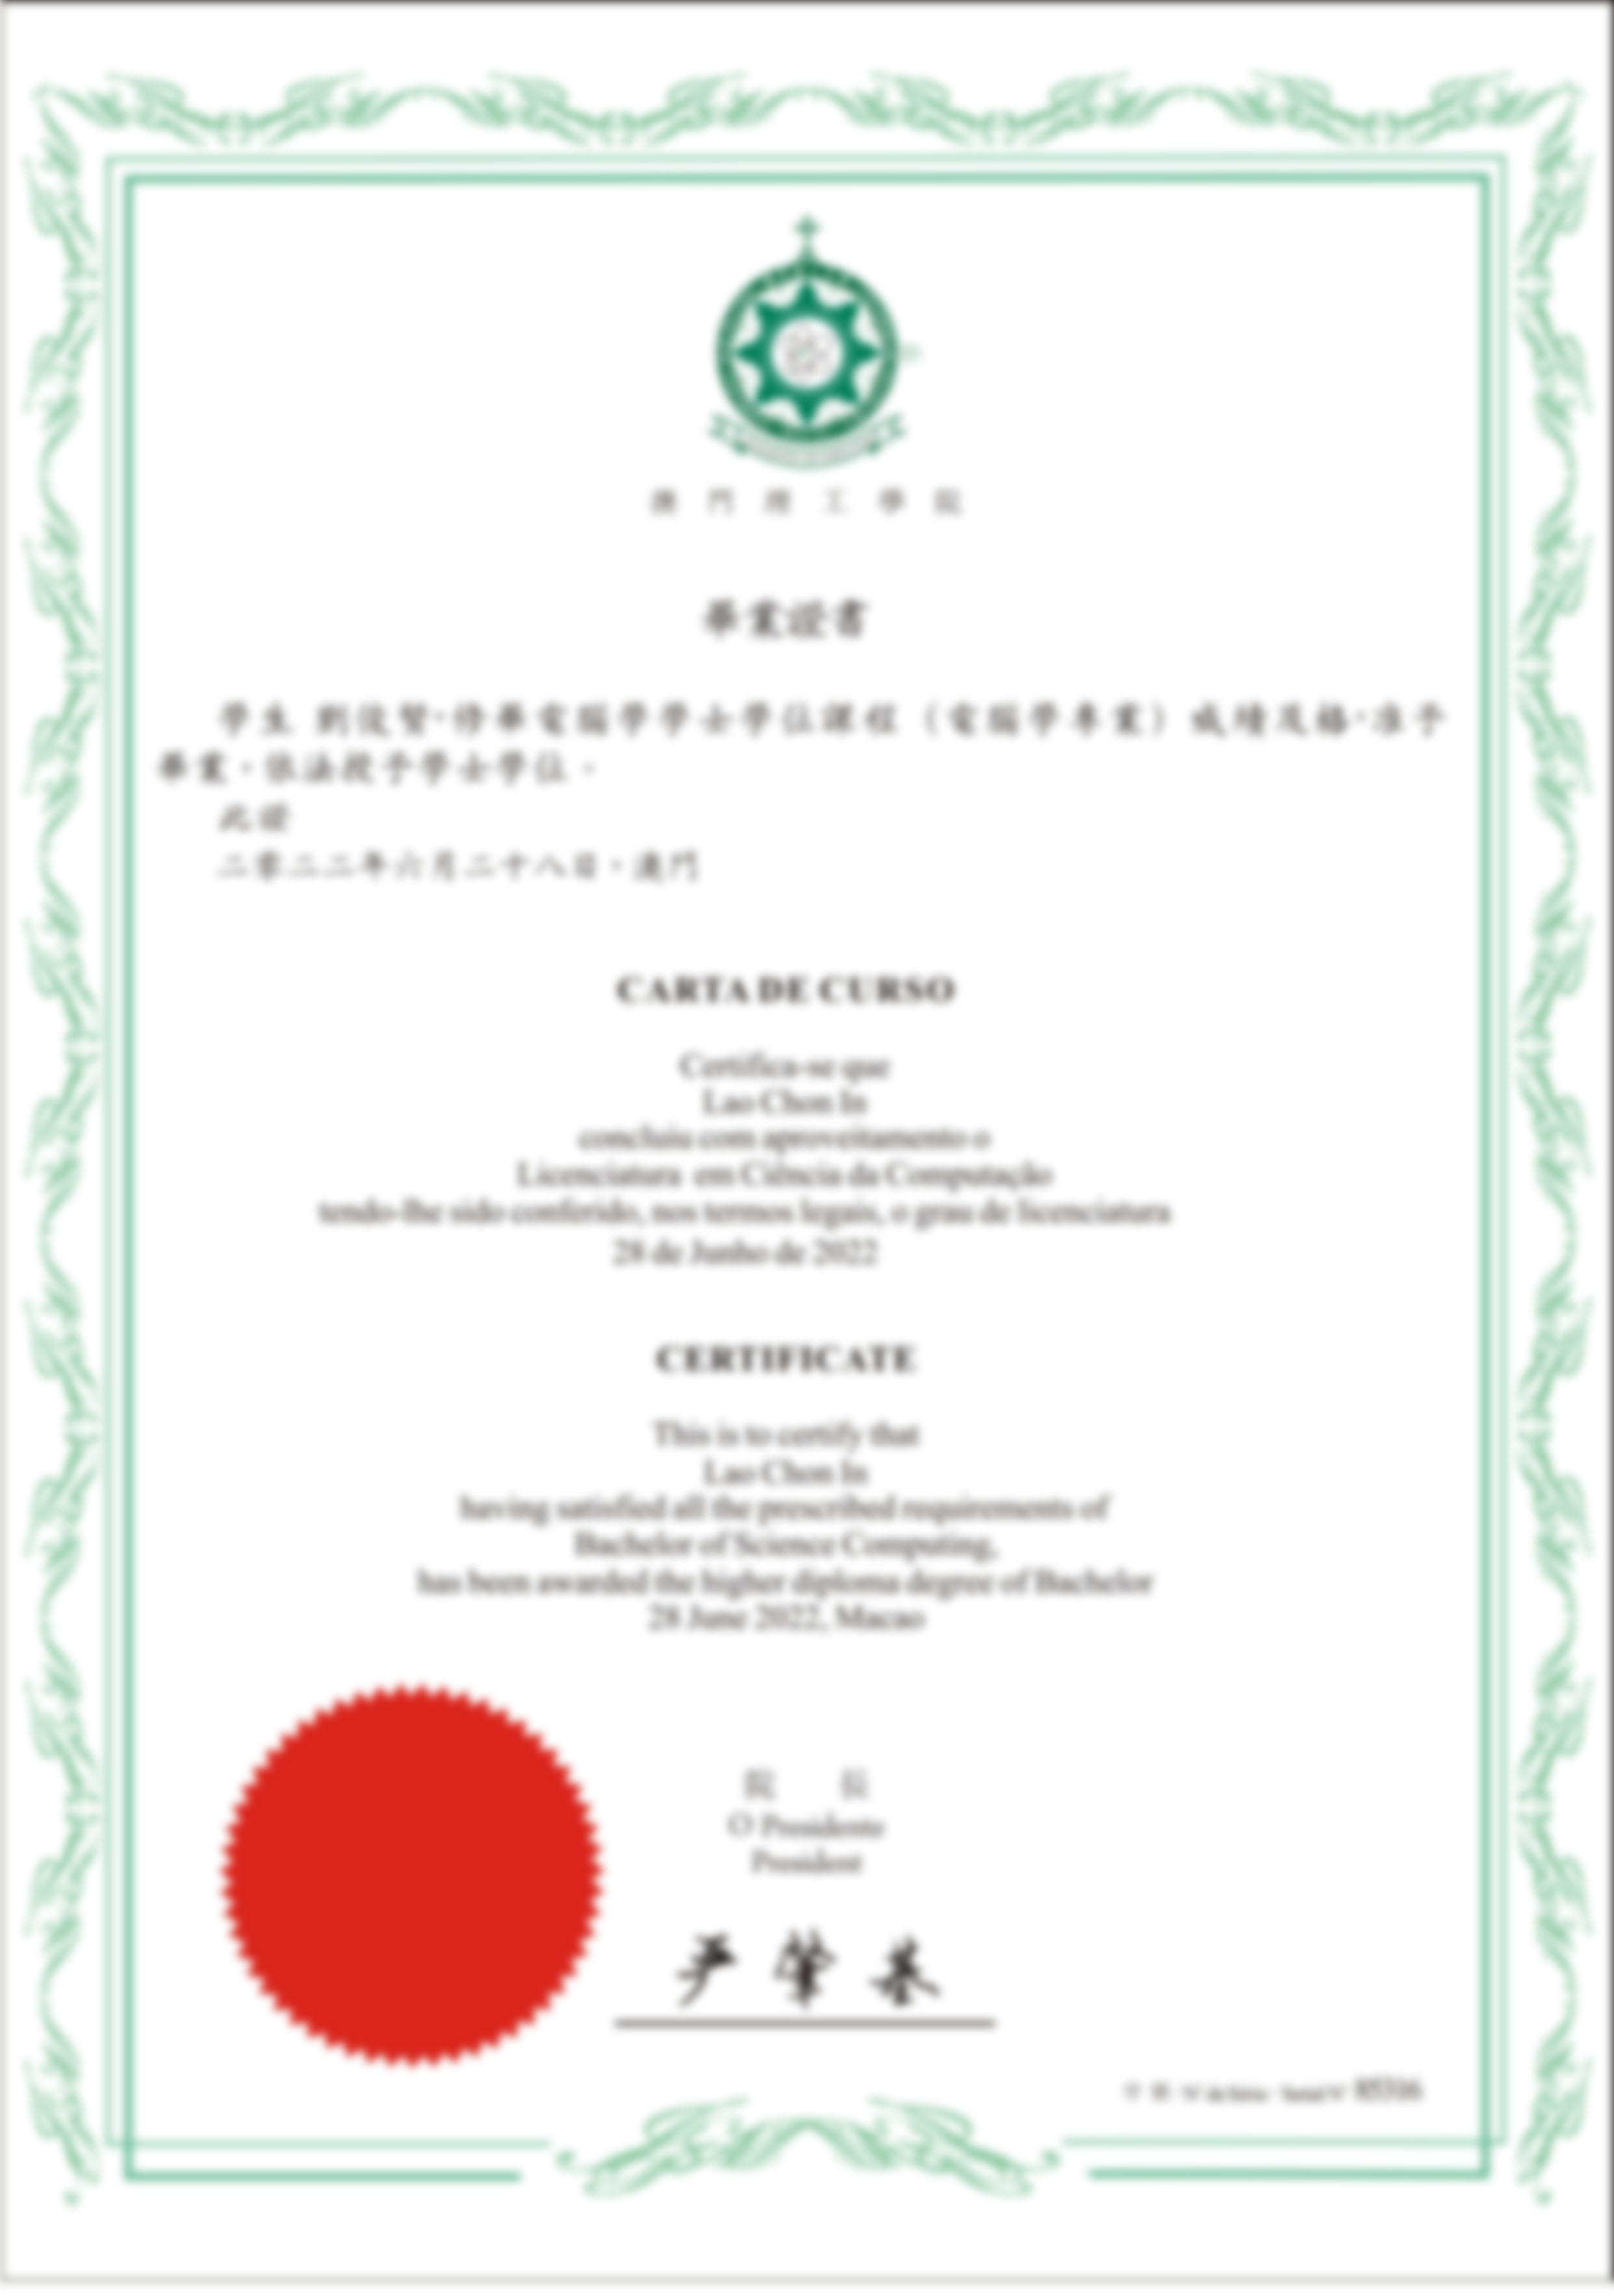 澳门理工大学毕业证书Macau Polytechnic University Graduation Certificate